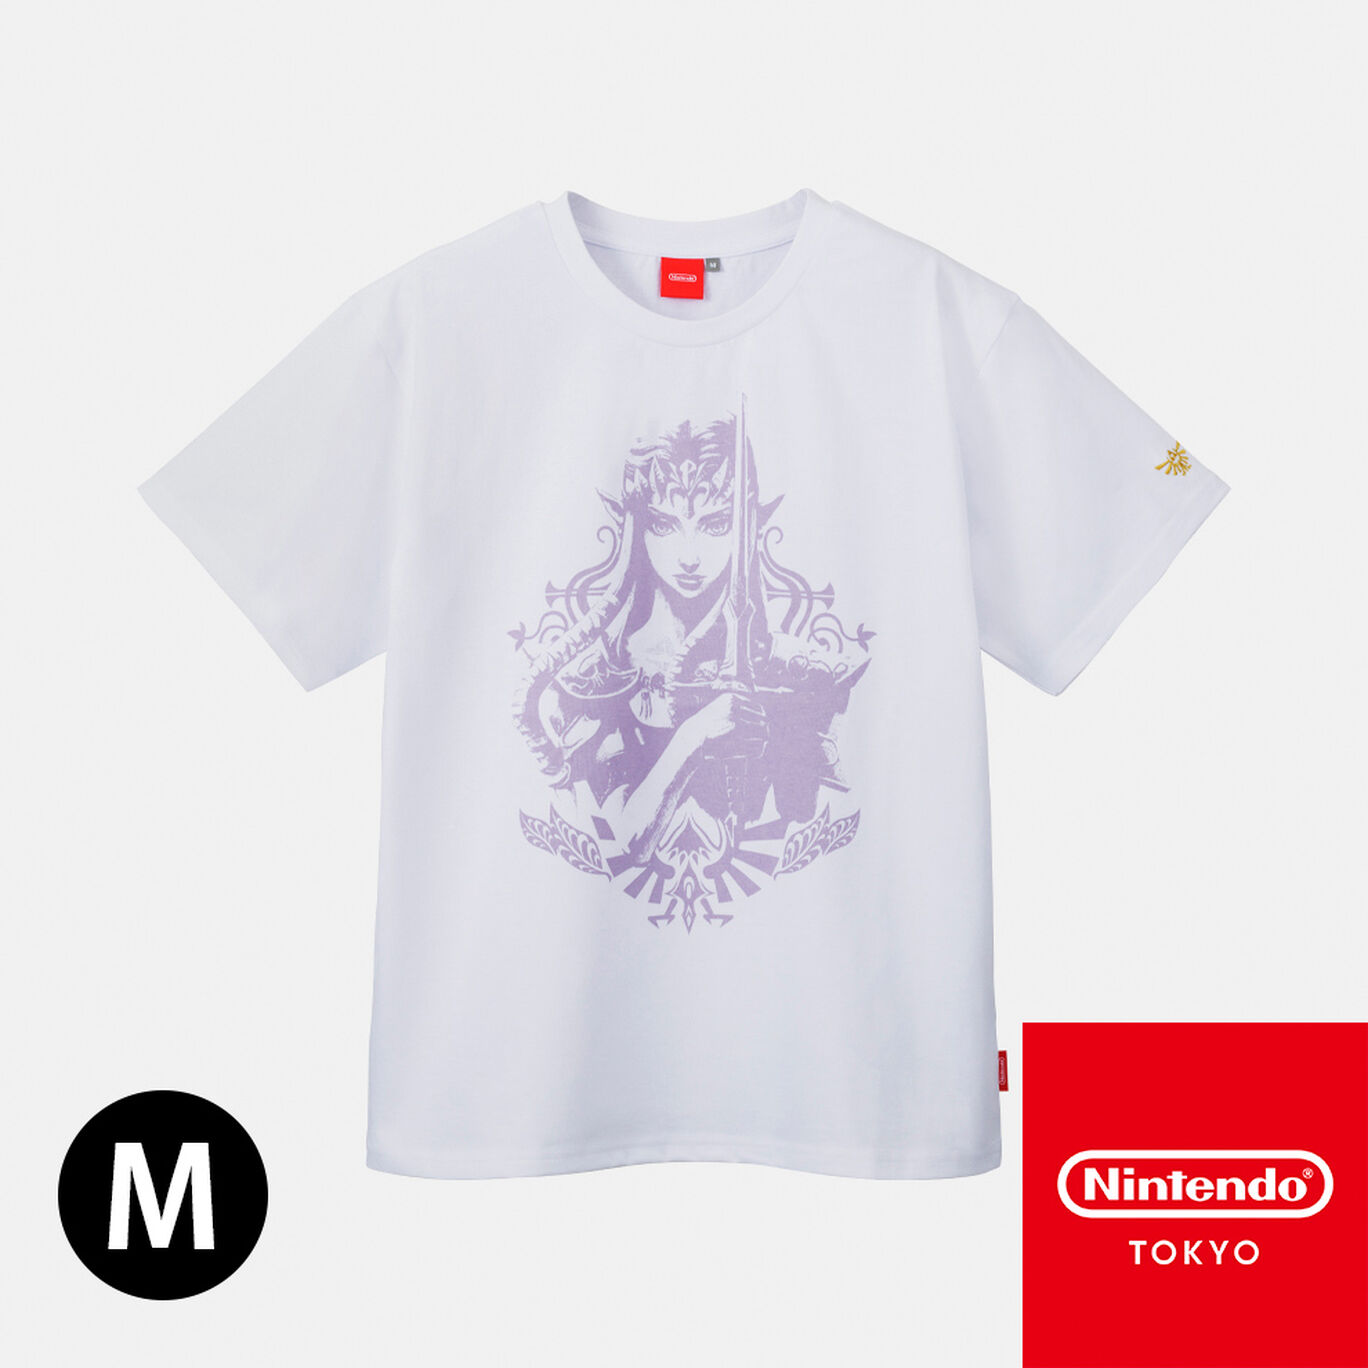 Tシャツ トライフォース ゼルダ M ゼルダの伝説【Nintendo TOKYO取り扱い商品】